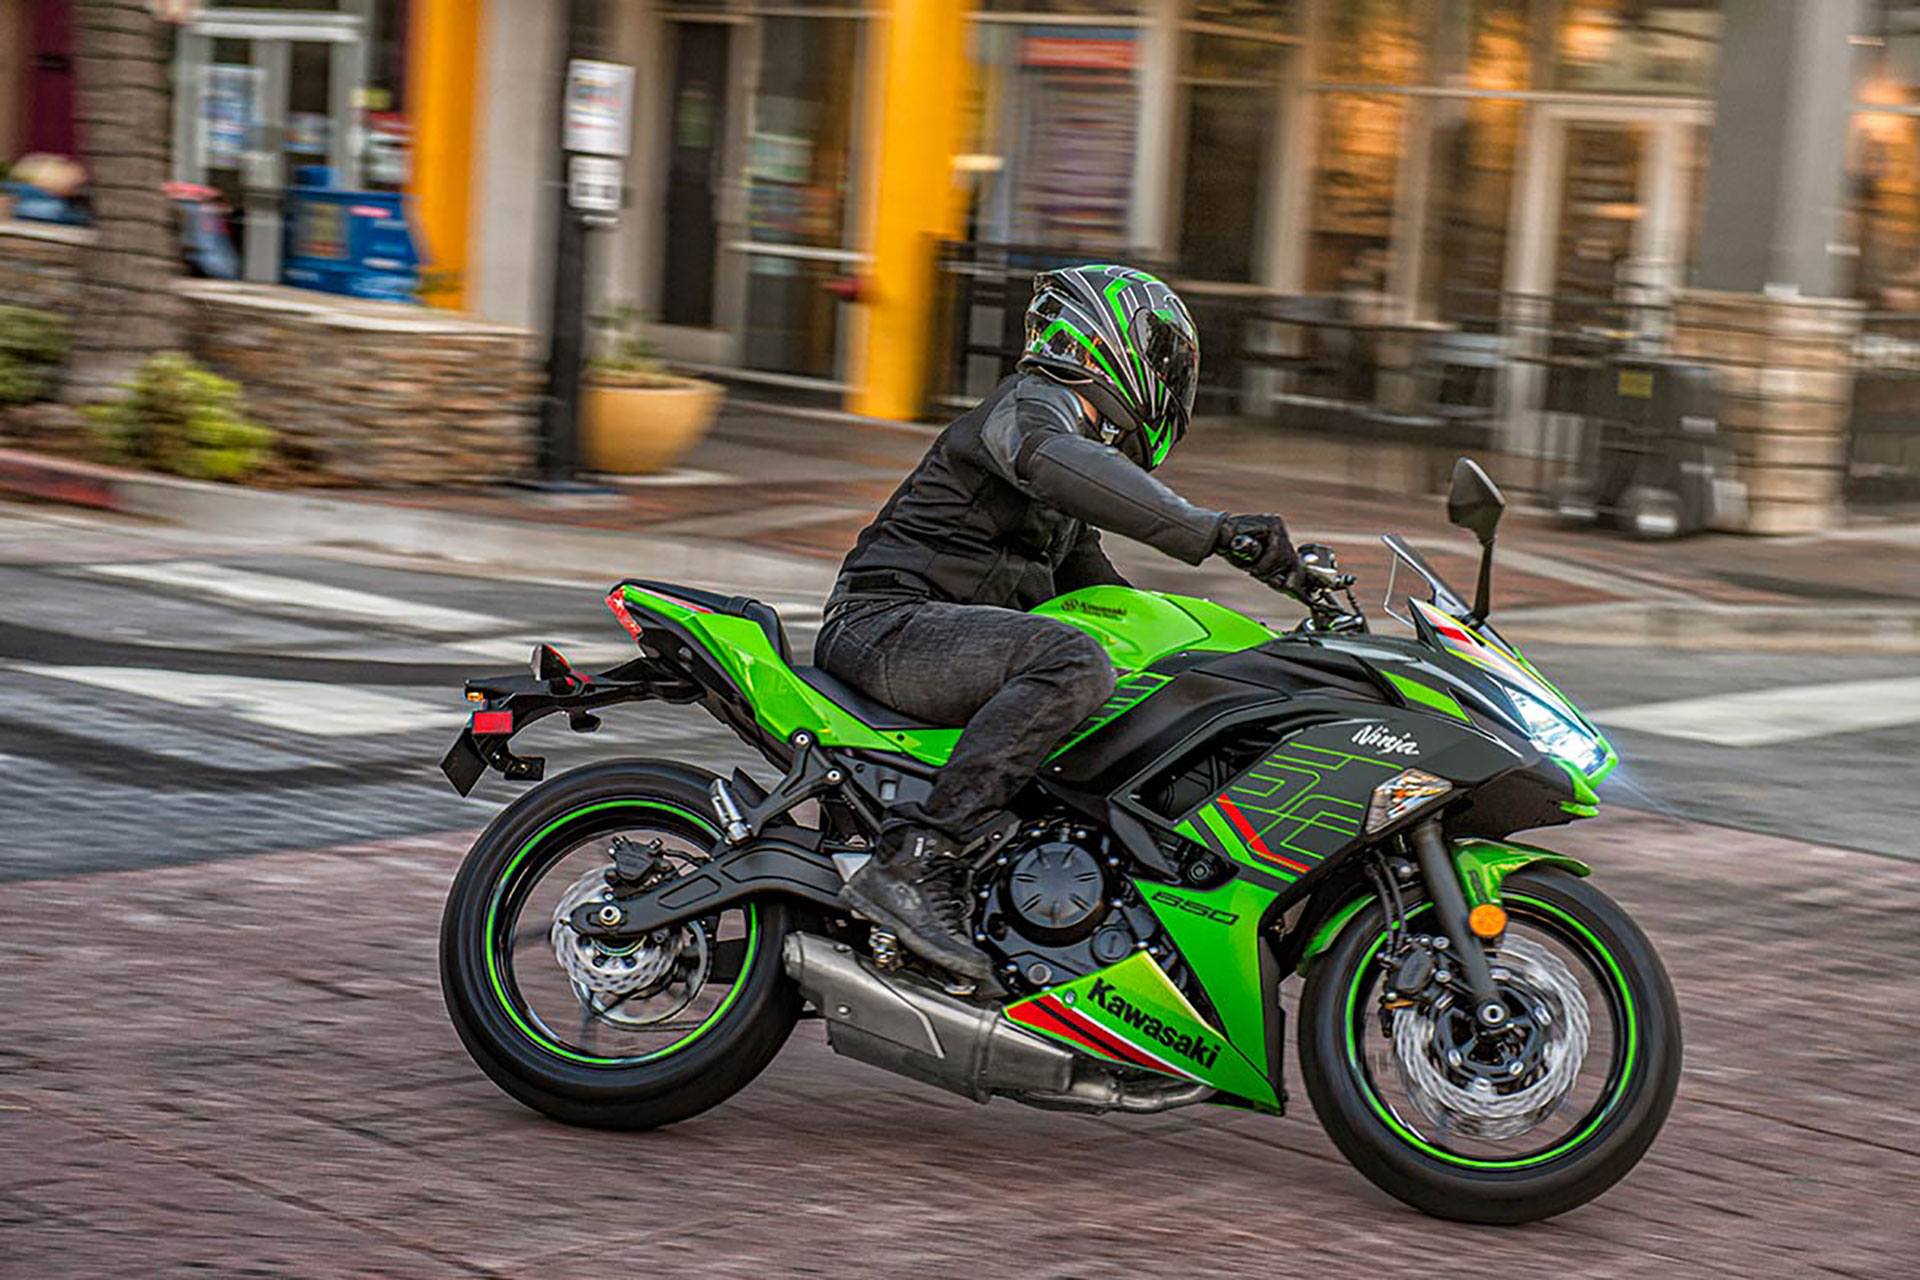 The Kawasaki Ninja 650 Gets Two New Colors For 2022